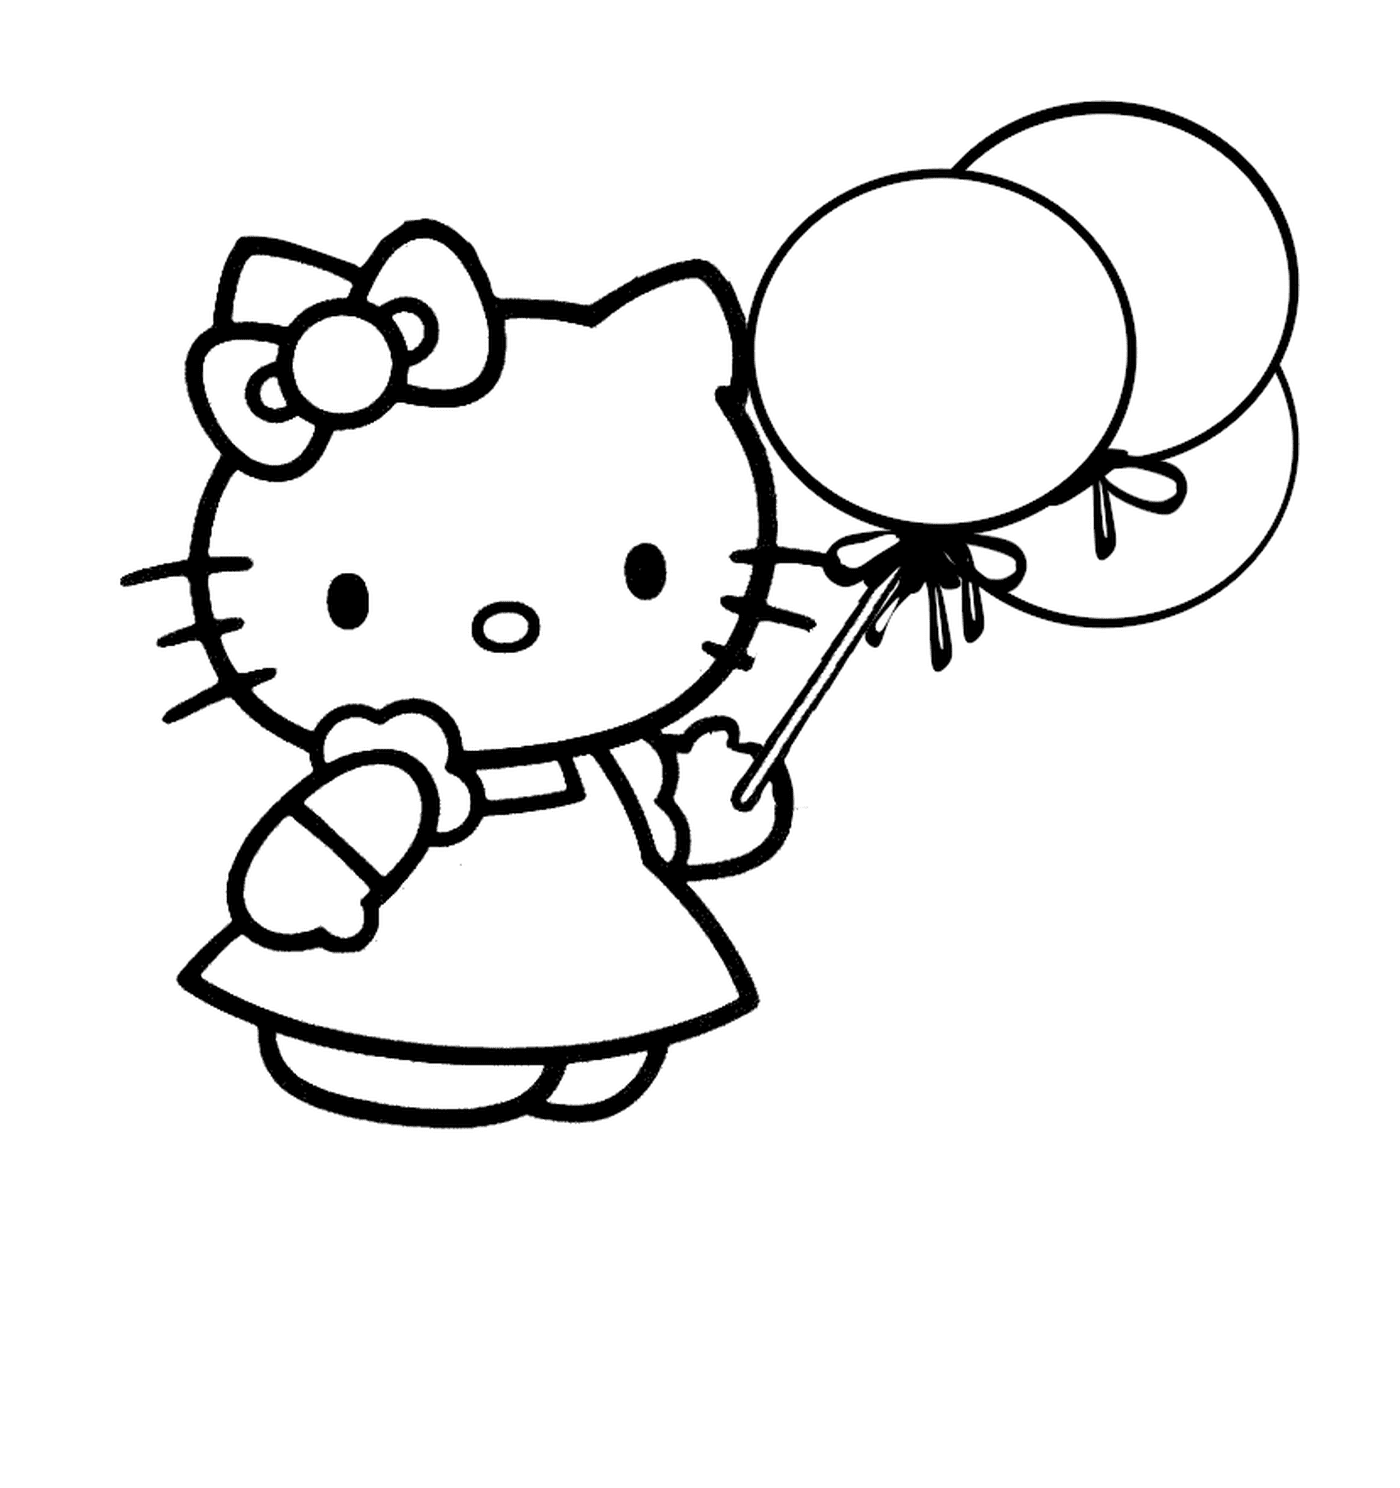  Hello Kitty holding balloons 